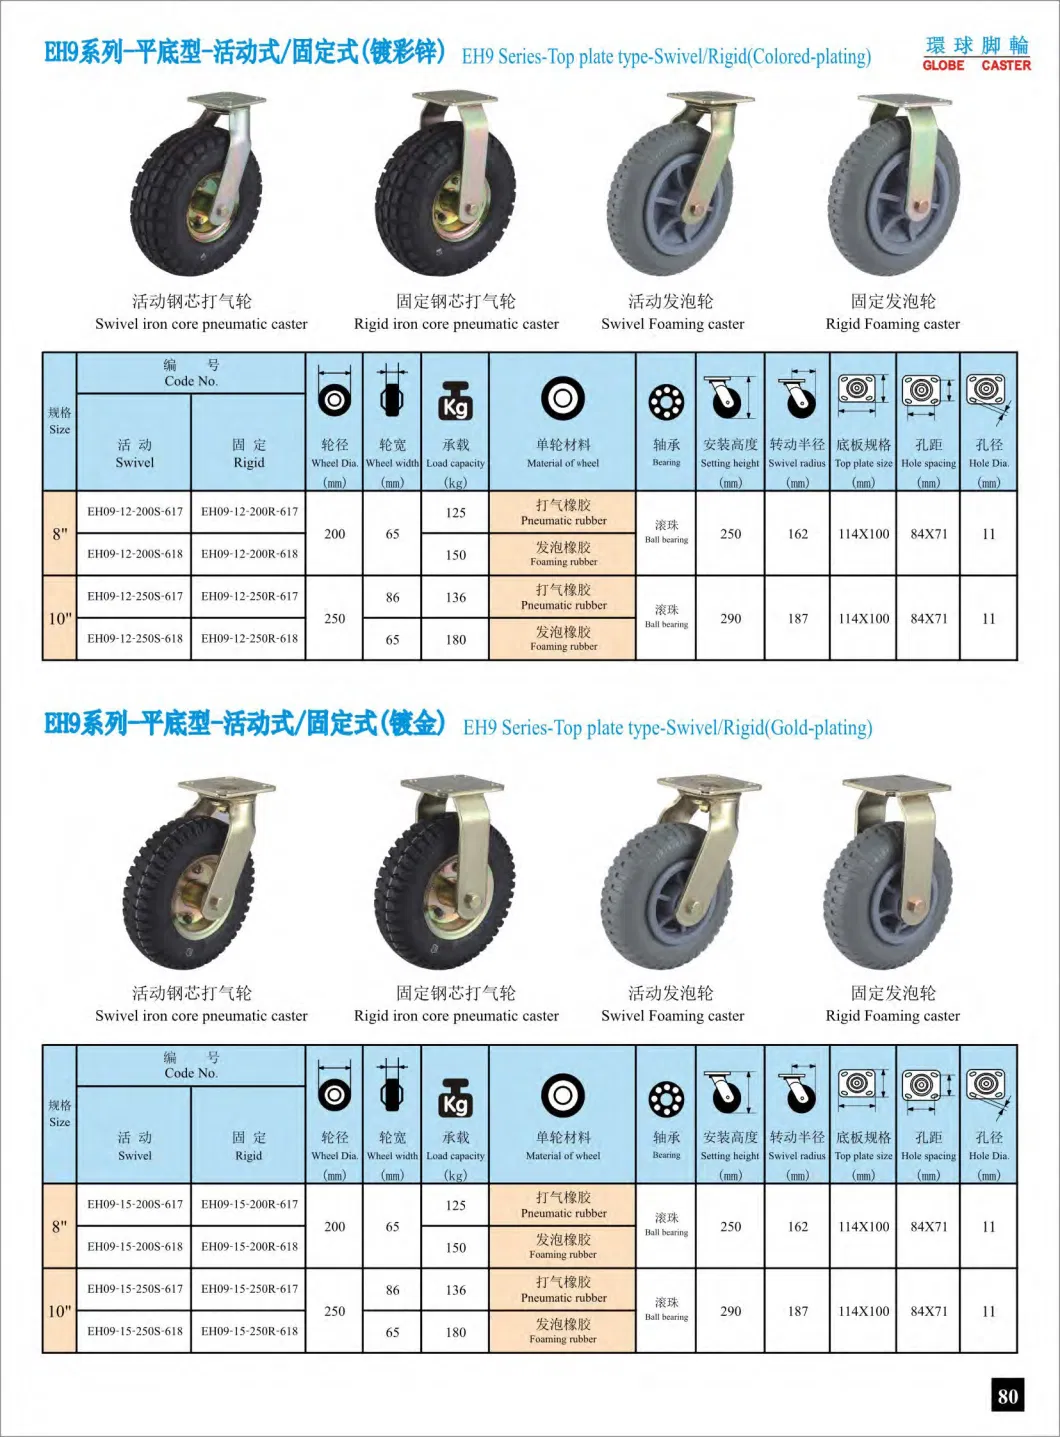 8-10 Inch Heavy Duty Swivel /Fixed Pneumatic Rubber Castor Wheel (Black)